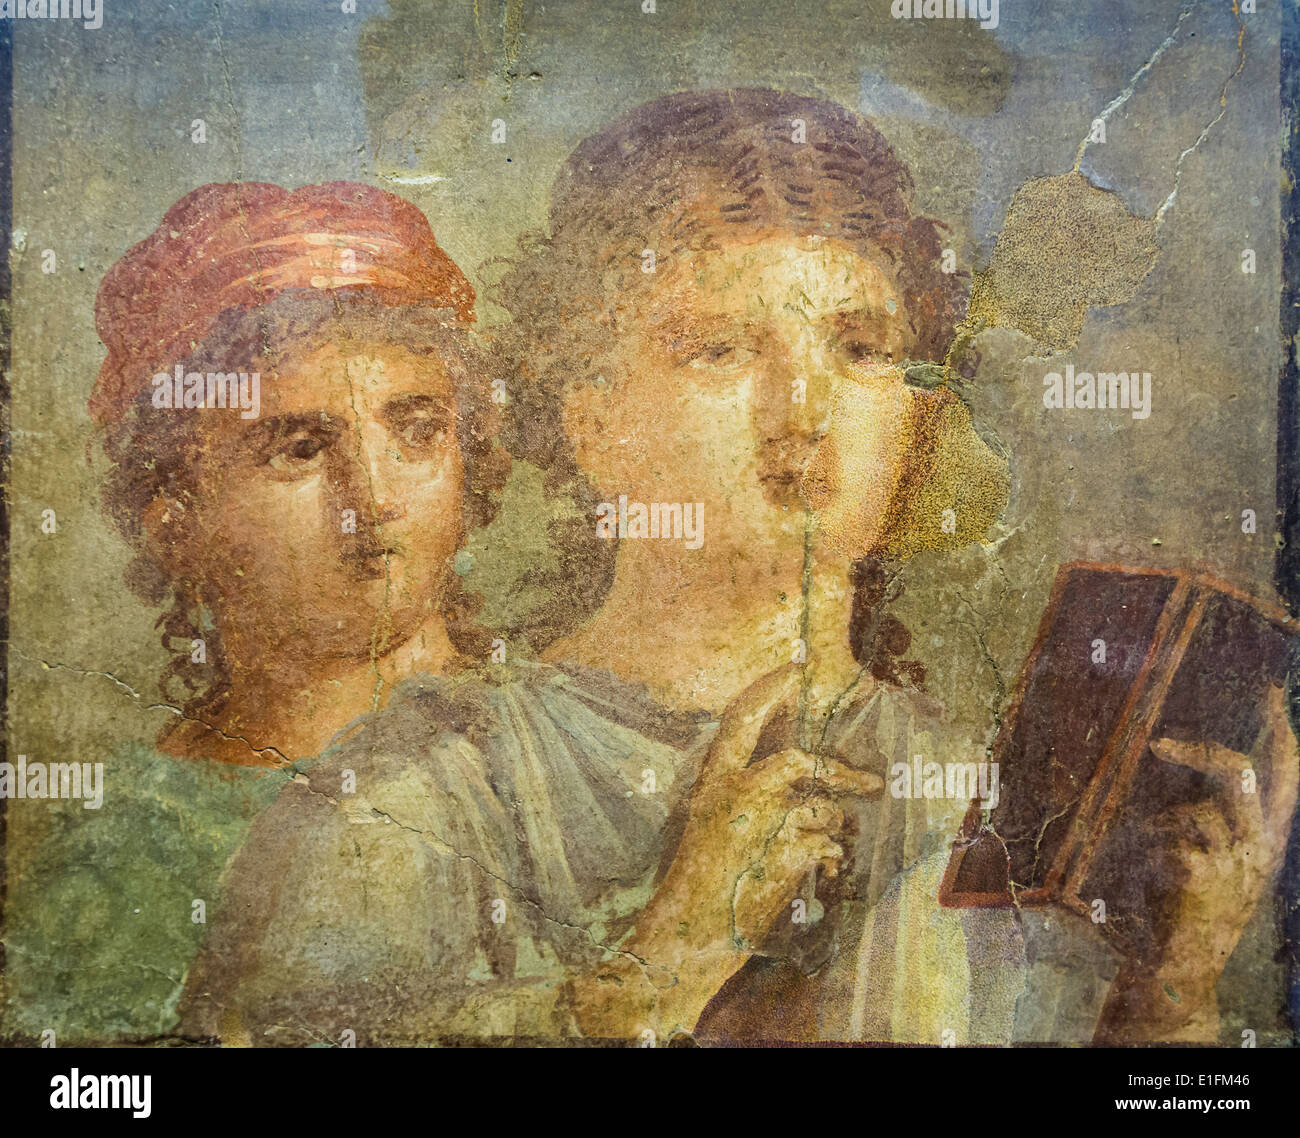 Italien. 1. Jahrhundert n. Chr. Fresko aus Pompeji der Mädchen lesen. Claudian-Neronische Zeit. Museo Archeologico Nazionale, Naples. Stockfoto